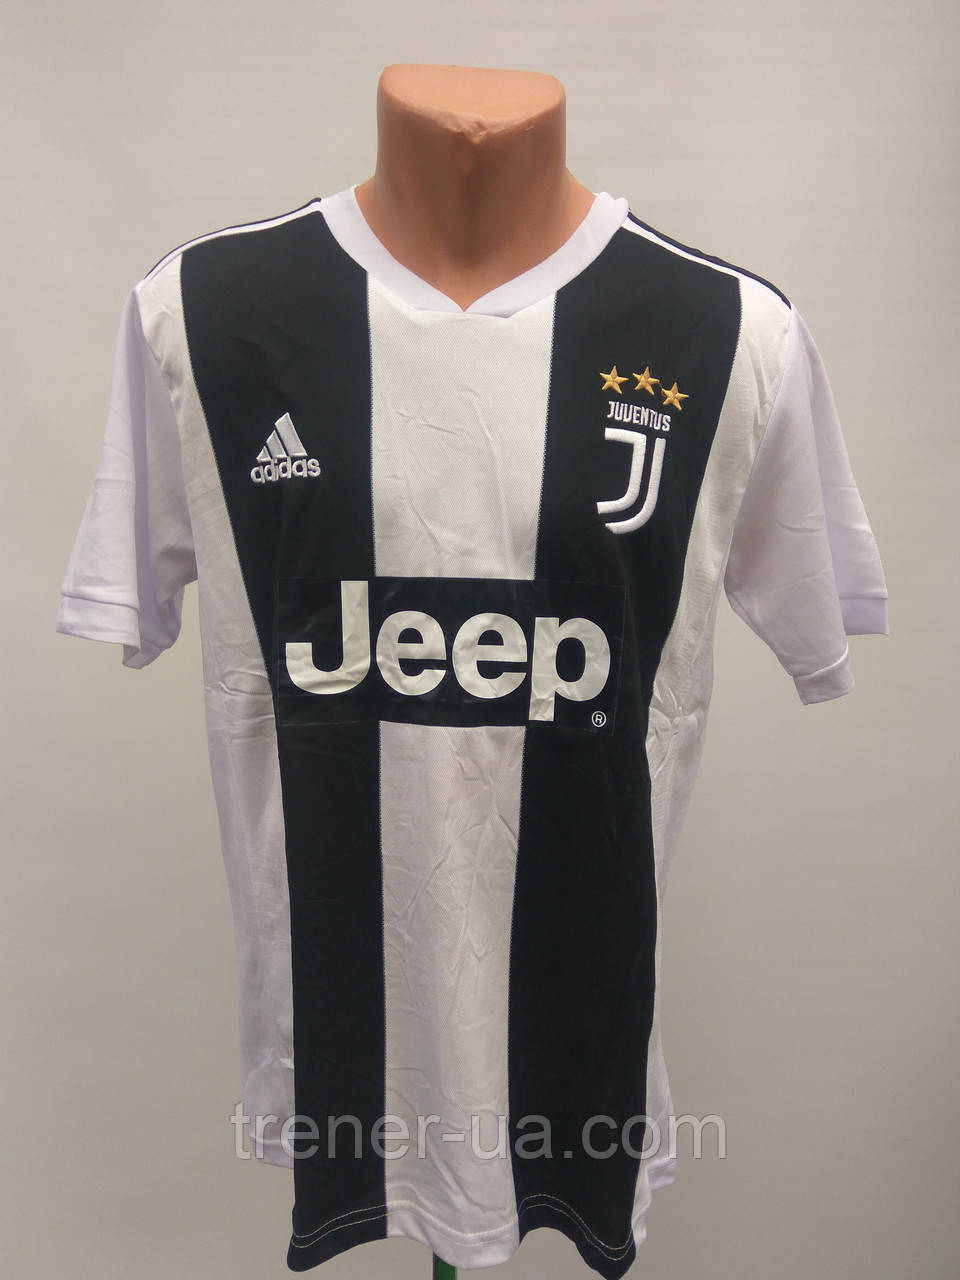 Форма доросла Juventus/Ювентус у стилі Adidas чорно-біла/Juventus доросла форма/футбольна форма доросла/